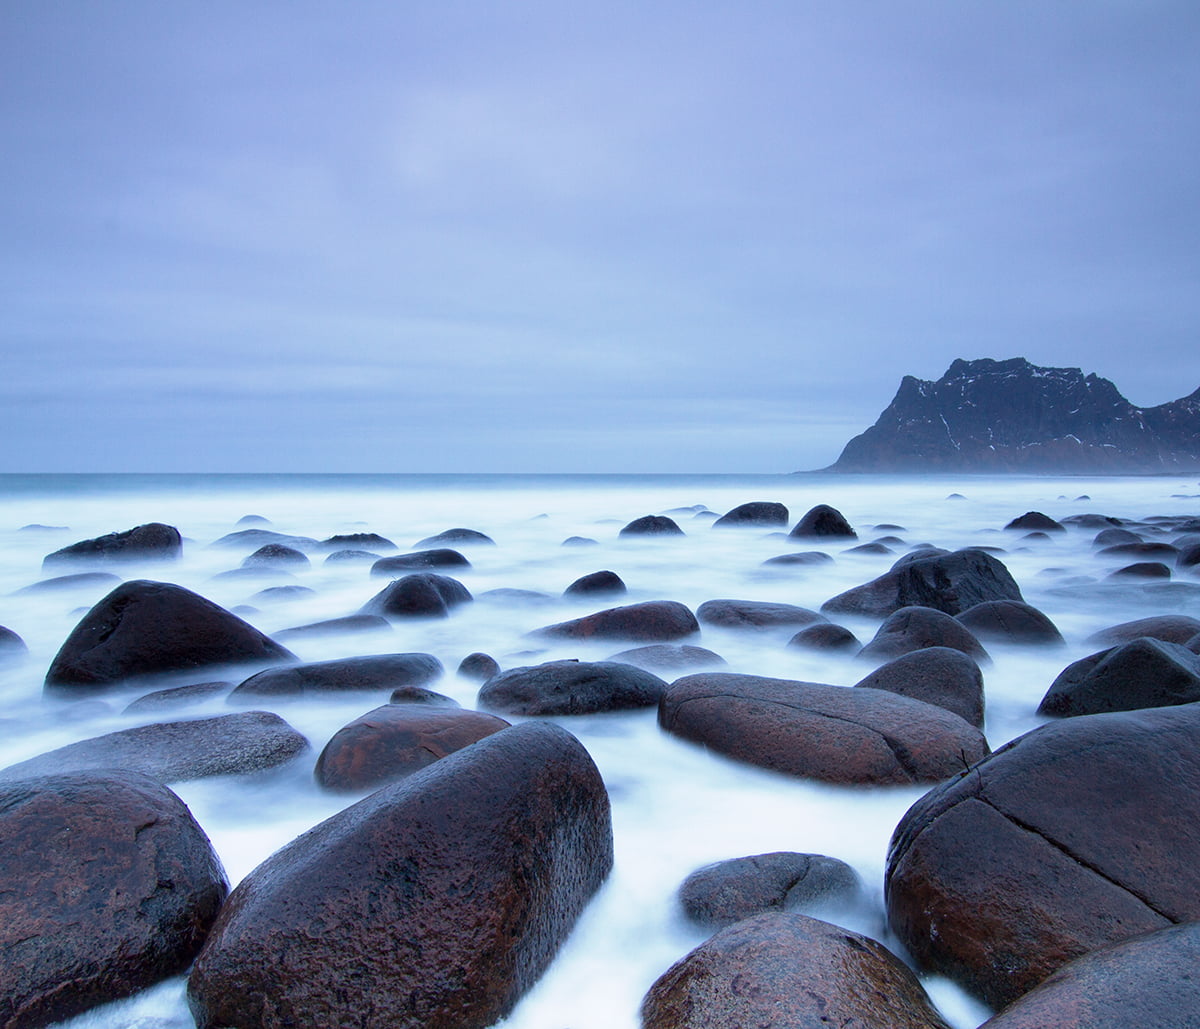 photo of rocks on sea